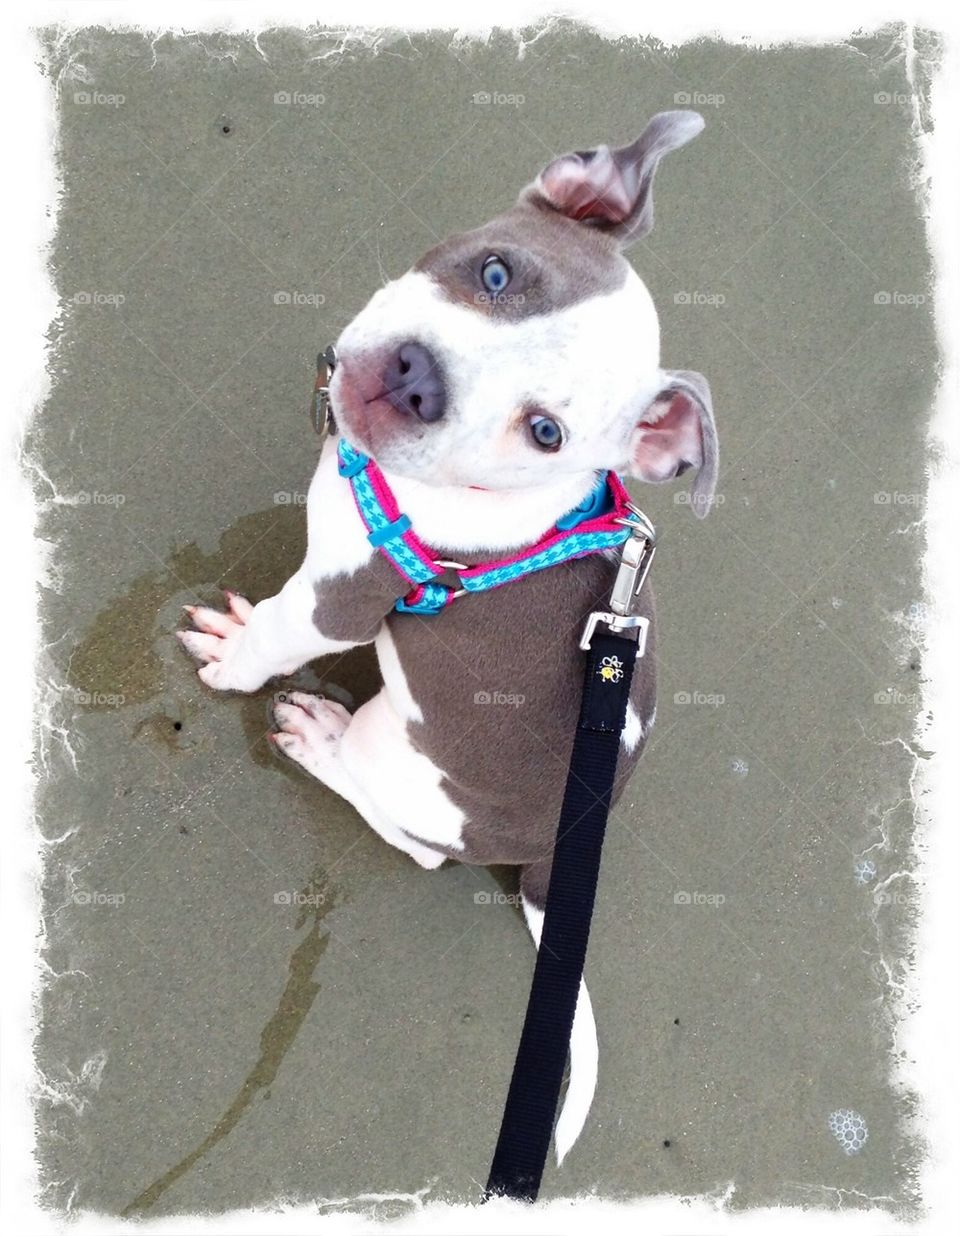 Sadi at the beach 